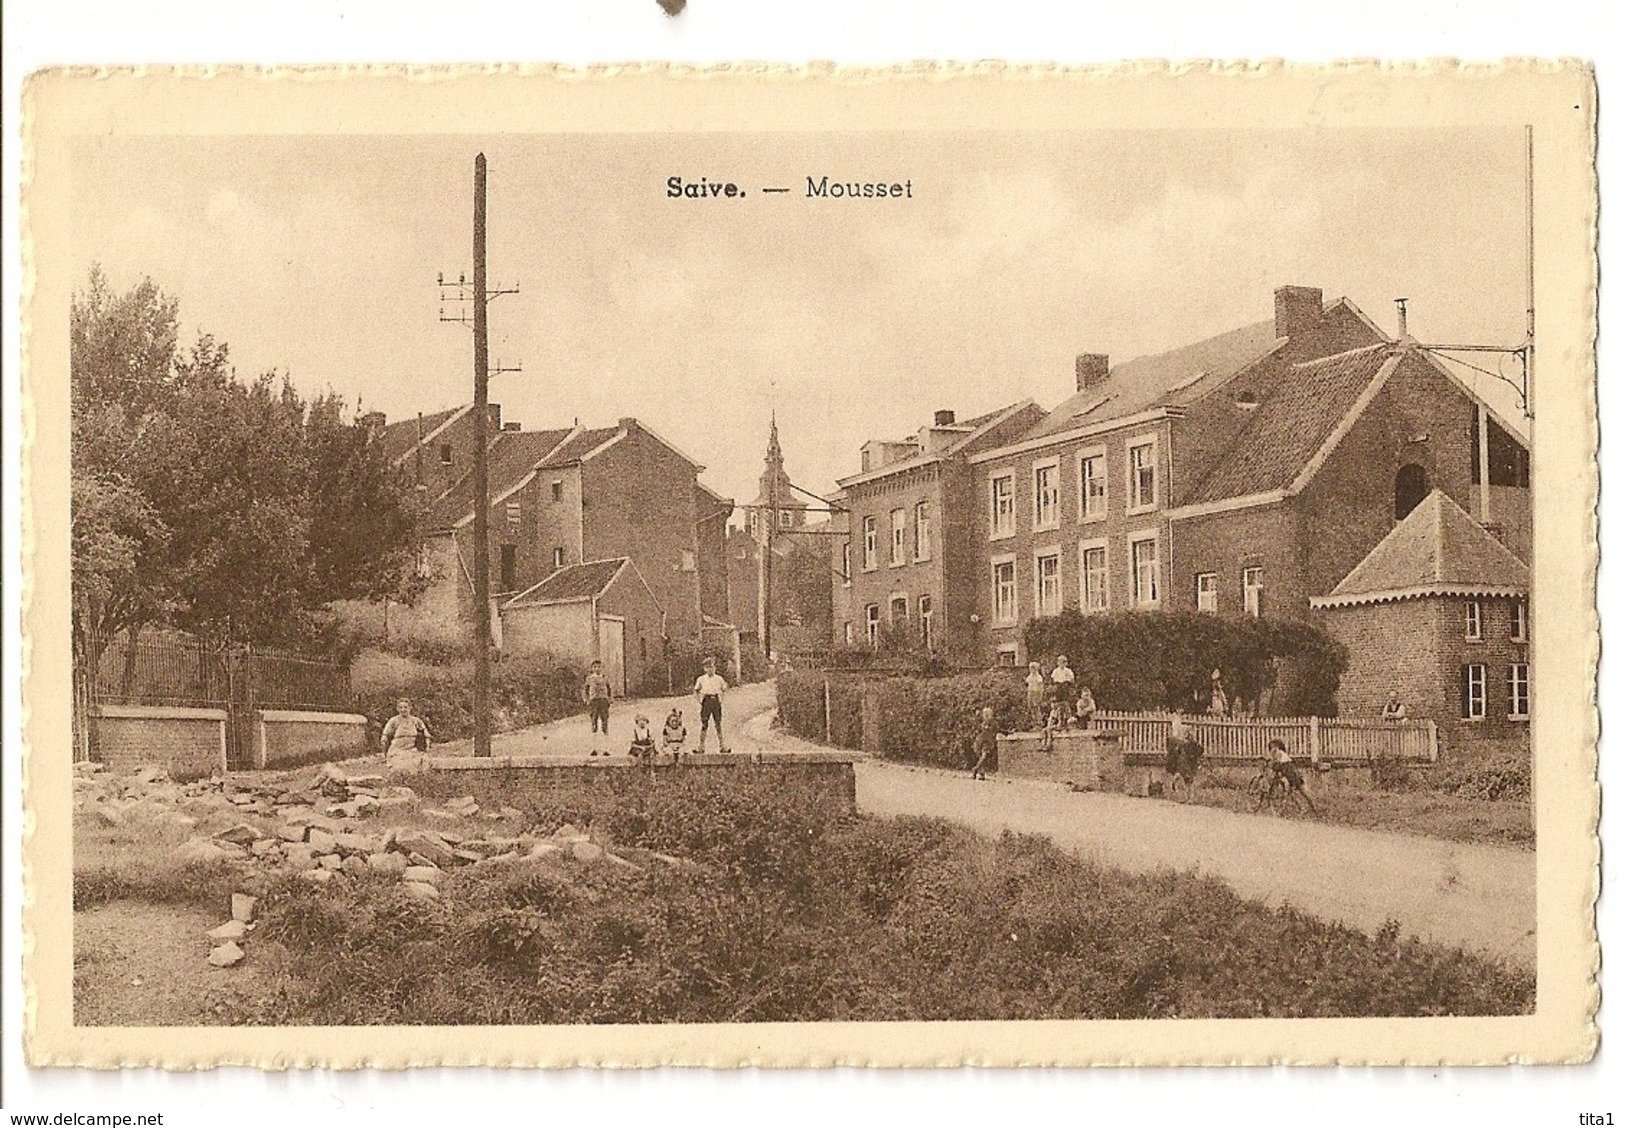 41 - Saive - Mousset - Blégny